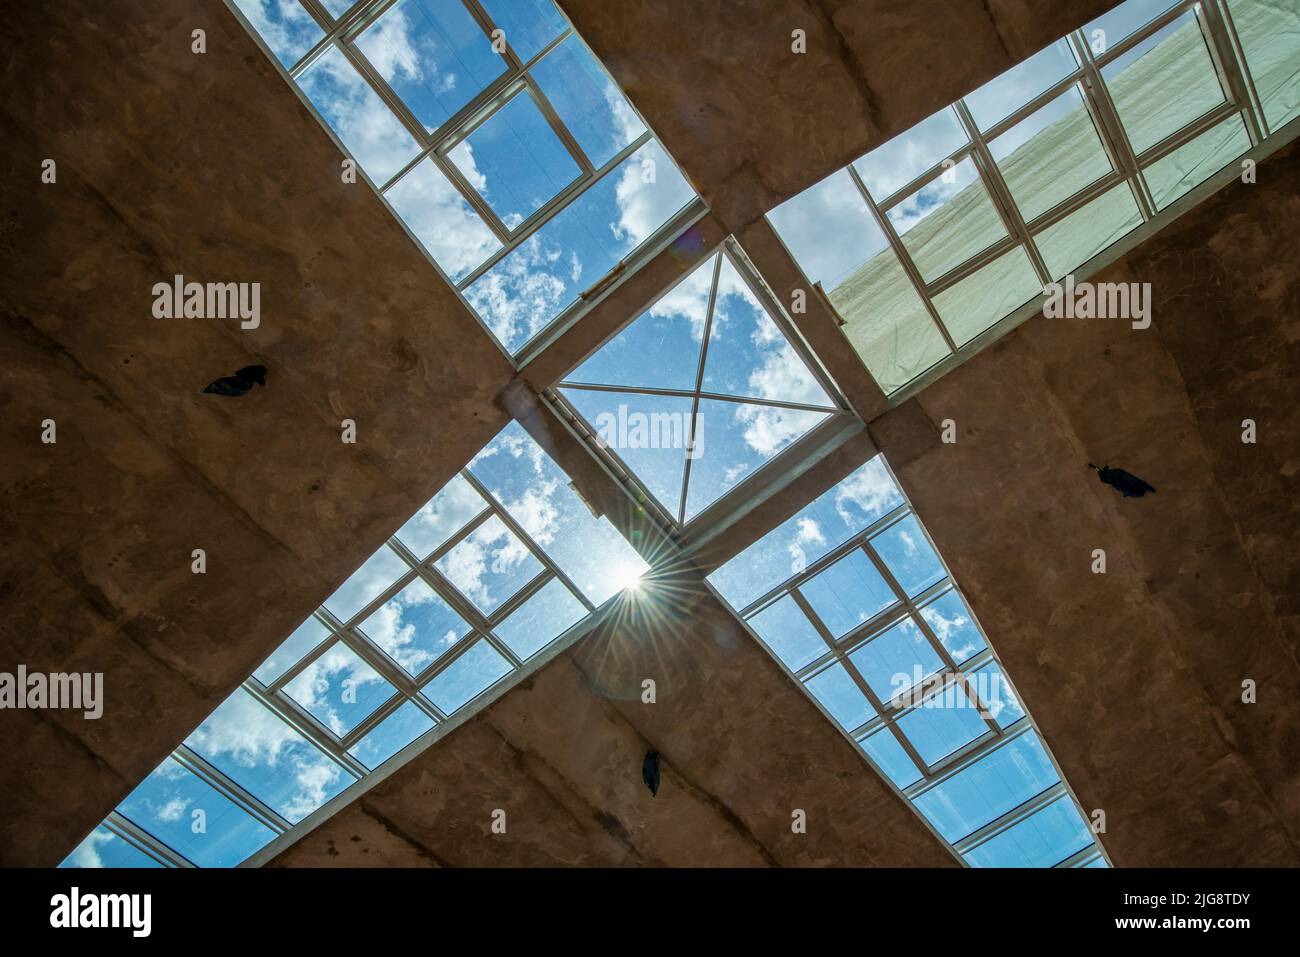 Lichtdurchflutetes Dach, Sanierung der Hyparschale Magdeburg, denkmalgeschütztes Gebäude, entstanden 1969 nach Plänen des Bauingenieurs Ulrich Müther, Magdeburg, Sachsen-Anhalt, Deutschland Stockfoto